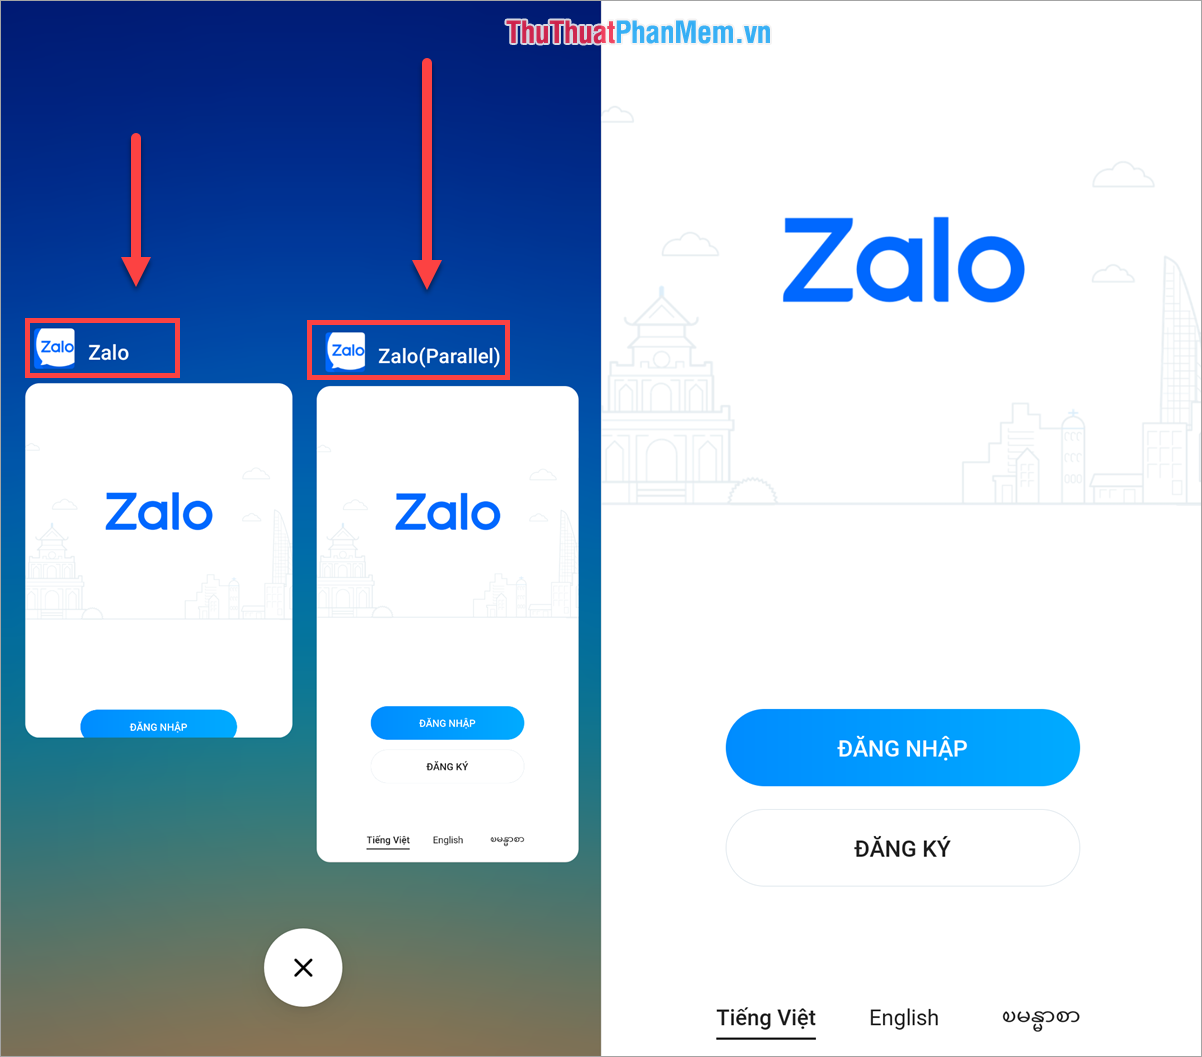 Kết quả là điện thoại có hai ứng dụng Zalo sử dụng hai tài khoản khác nhau.